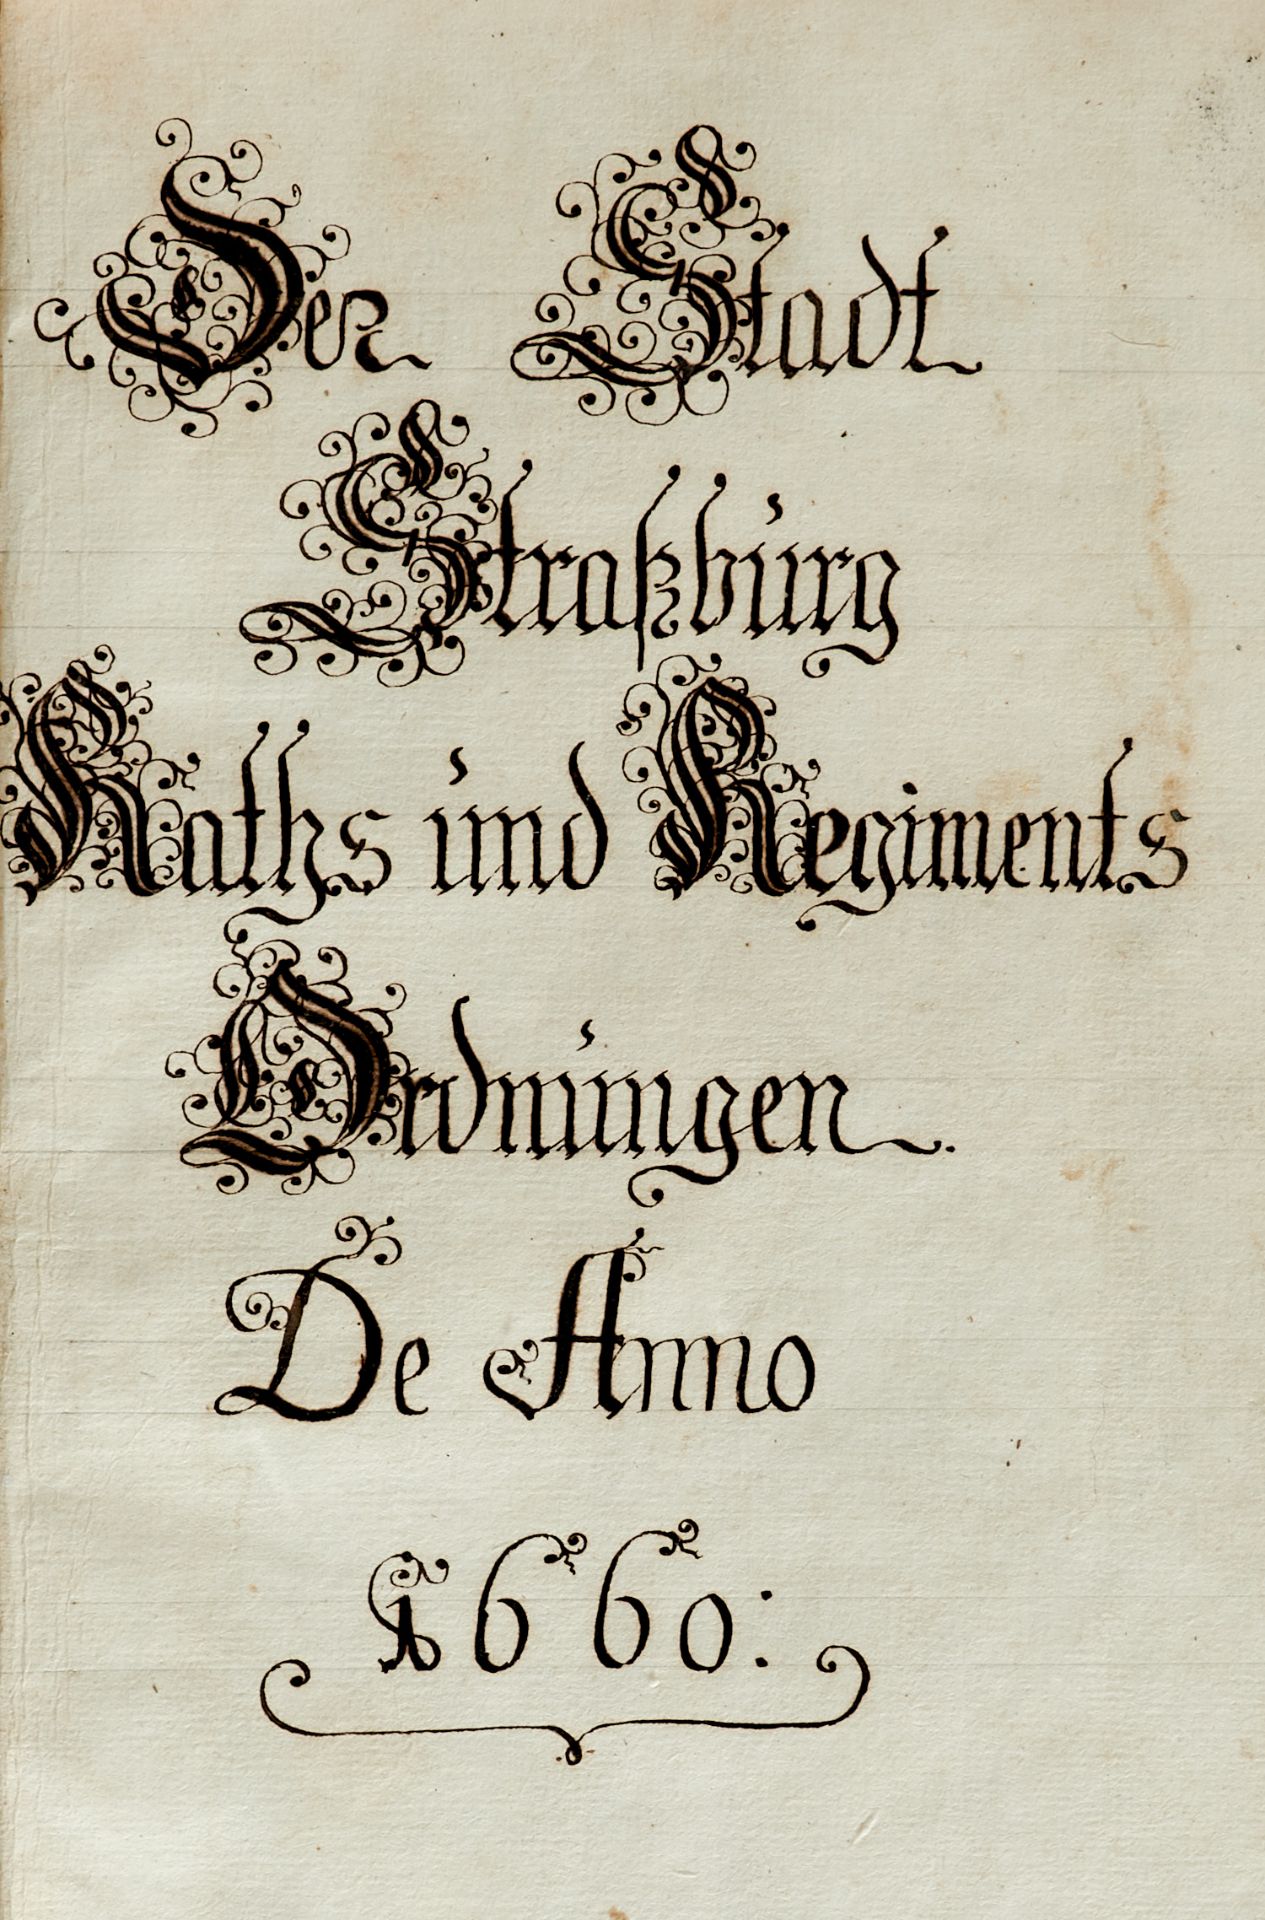 Strassburg - "Der Stadt Strassburg Raths und Regiments Ordnungen de Anno 1660". - Image 2 of 3